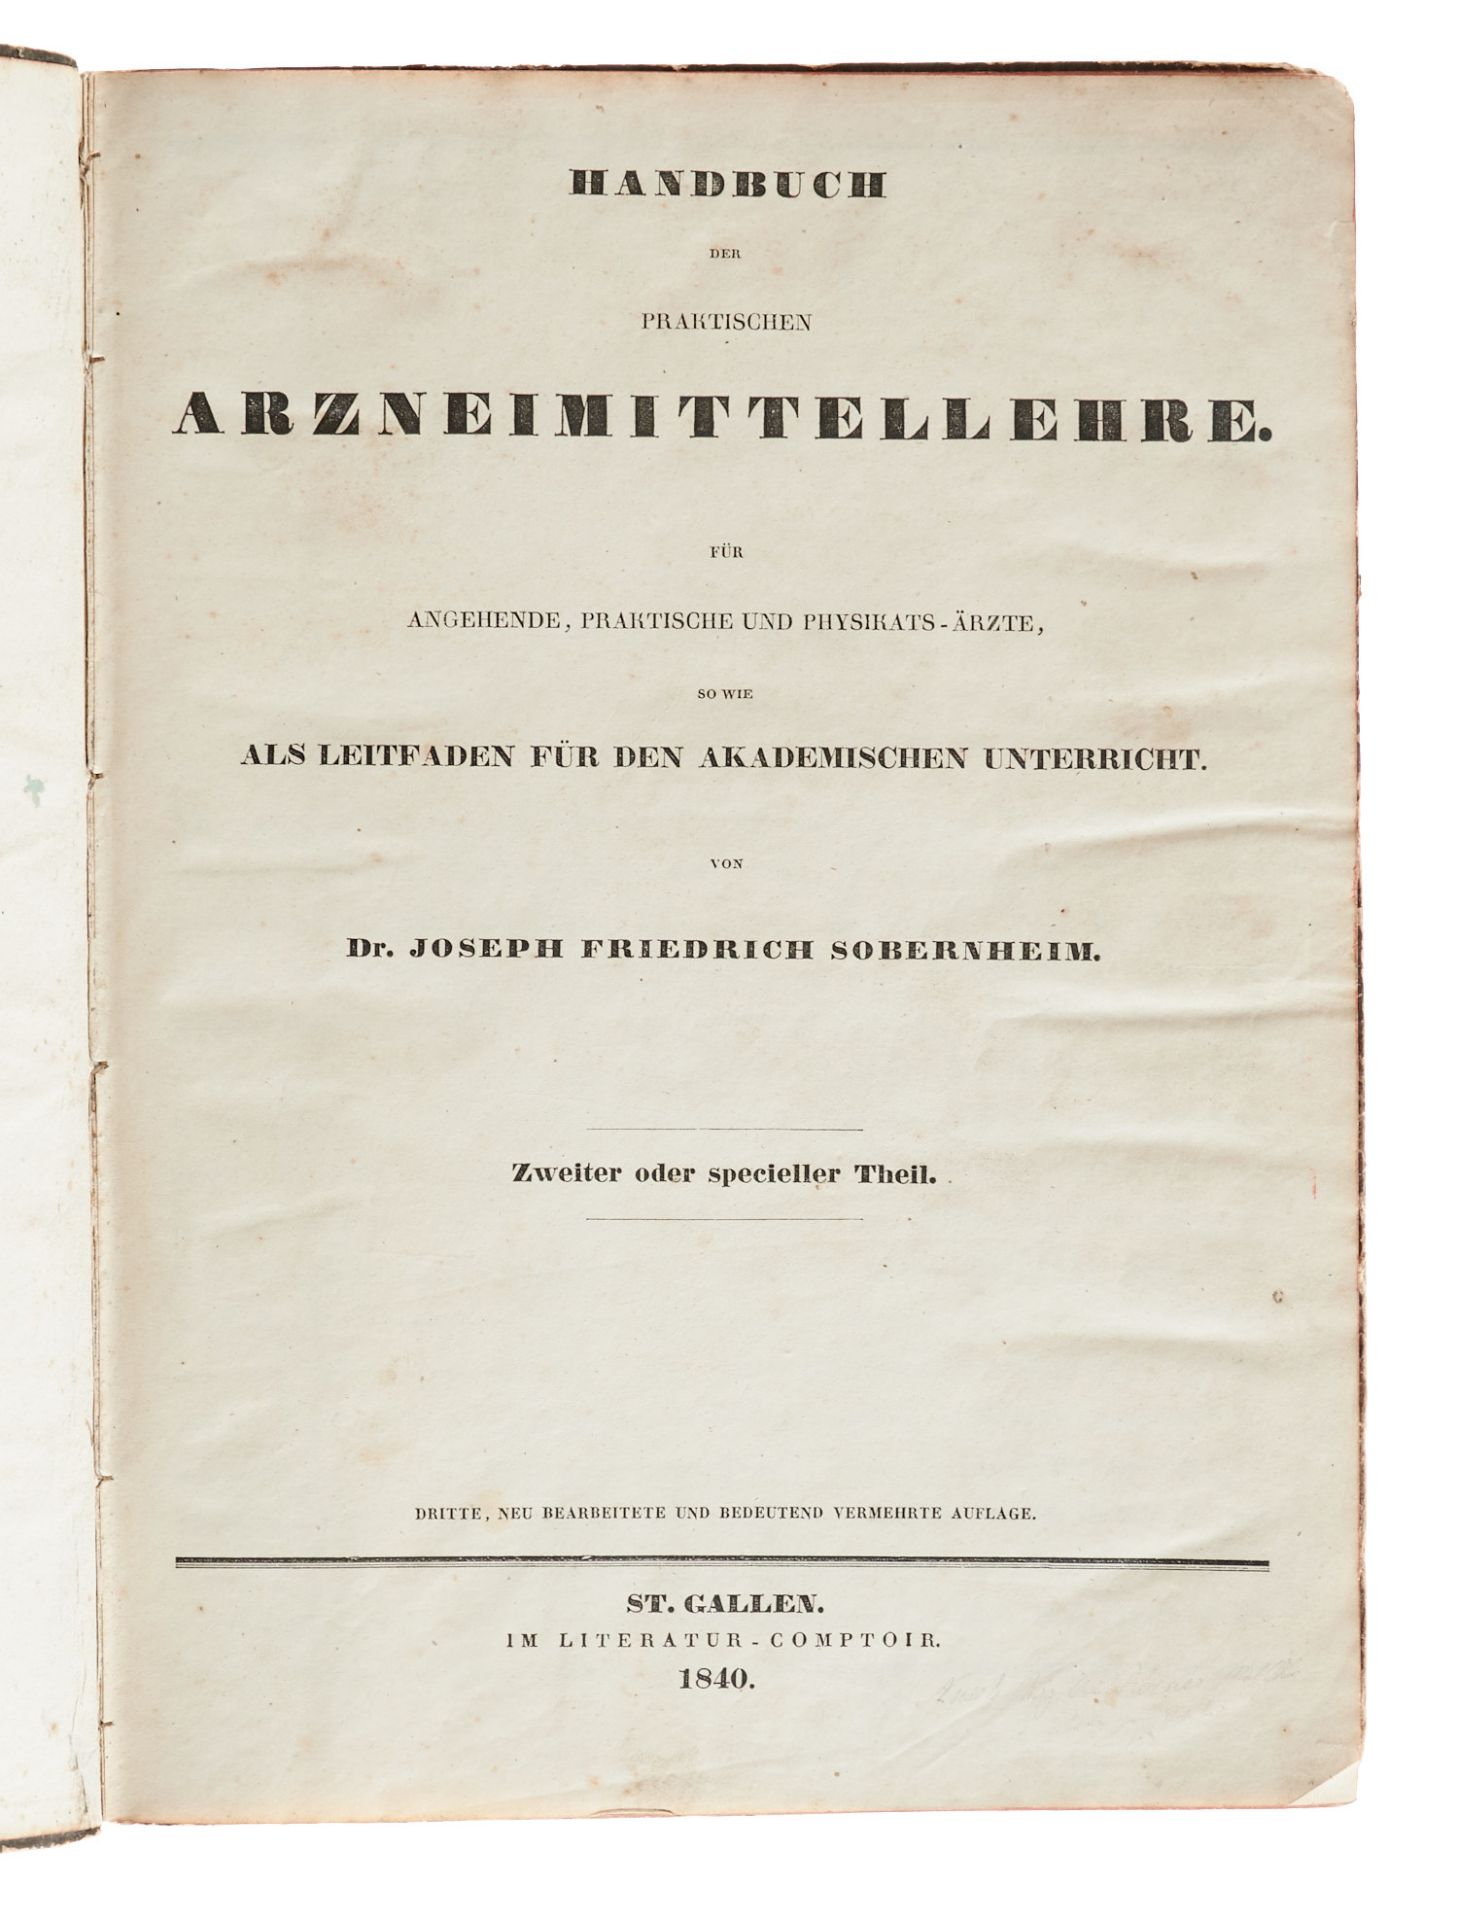 Pharmazie Konvolut - 5 pharmazeutische Werke. 1840-1930. Verschied. Formate. Verschied. Einbände - Bild 2 aus 6